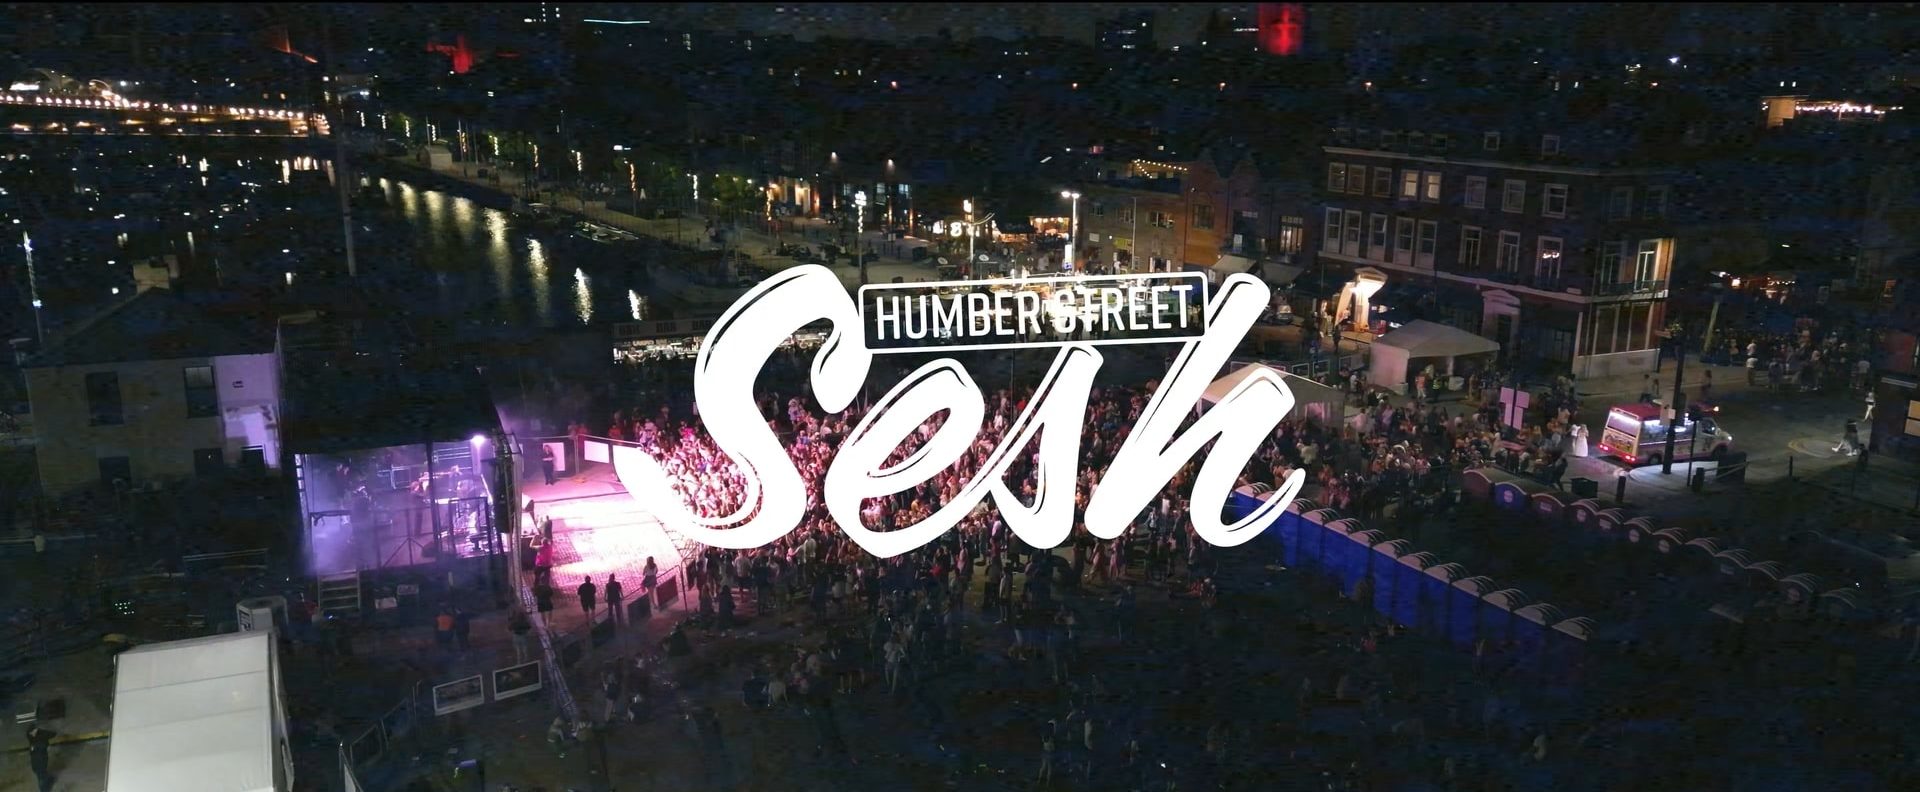 Humber Street Sesh 1.1.1 min e1681309954721